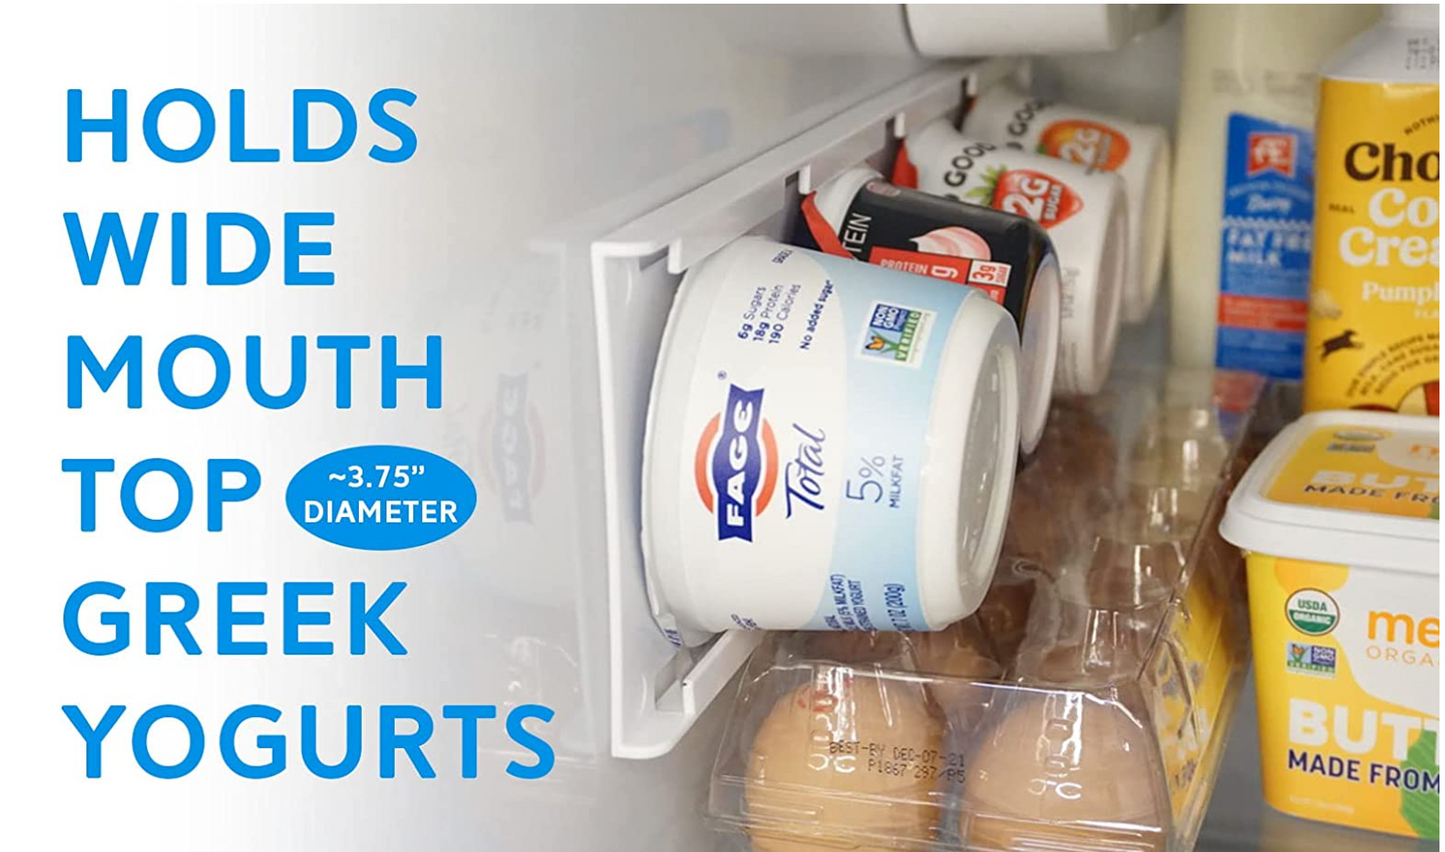 Refrigerator Space Saving Yogurt Organizer